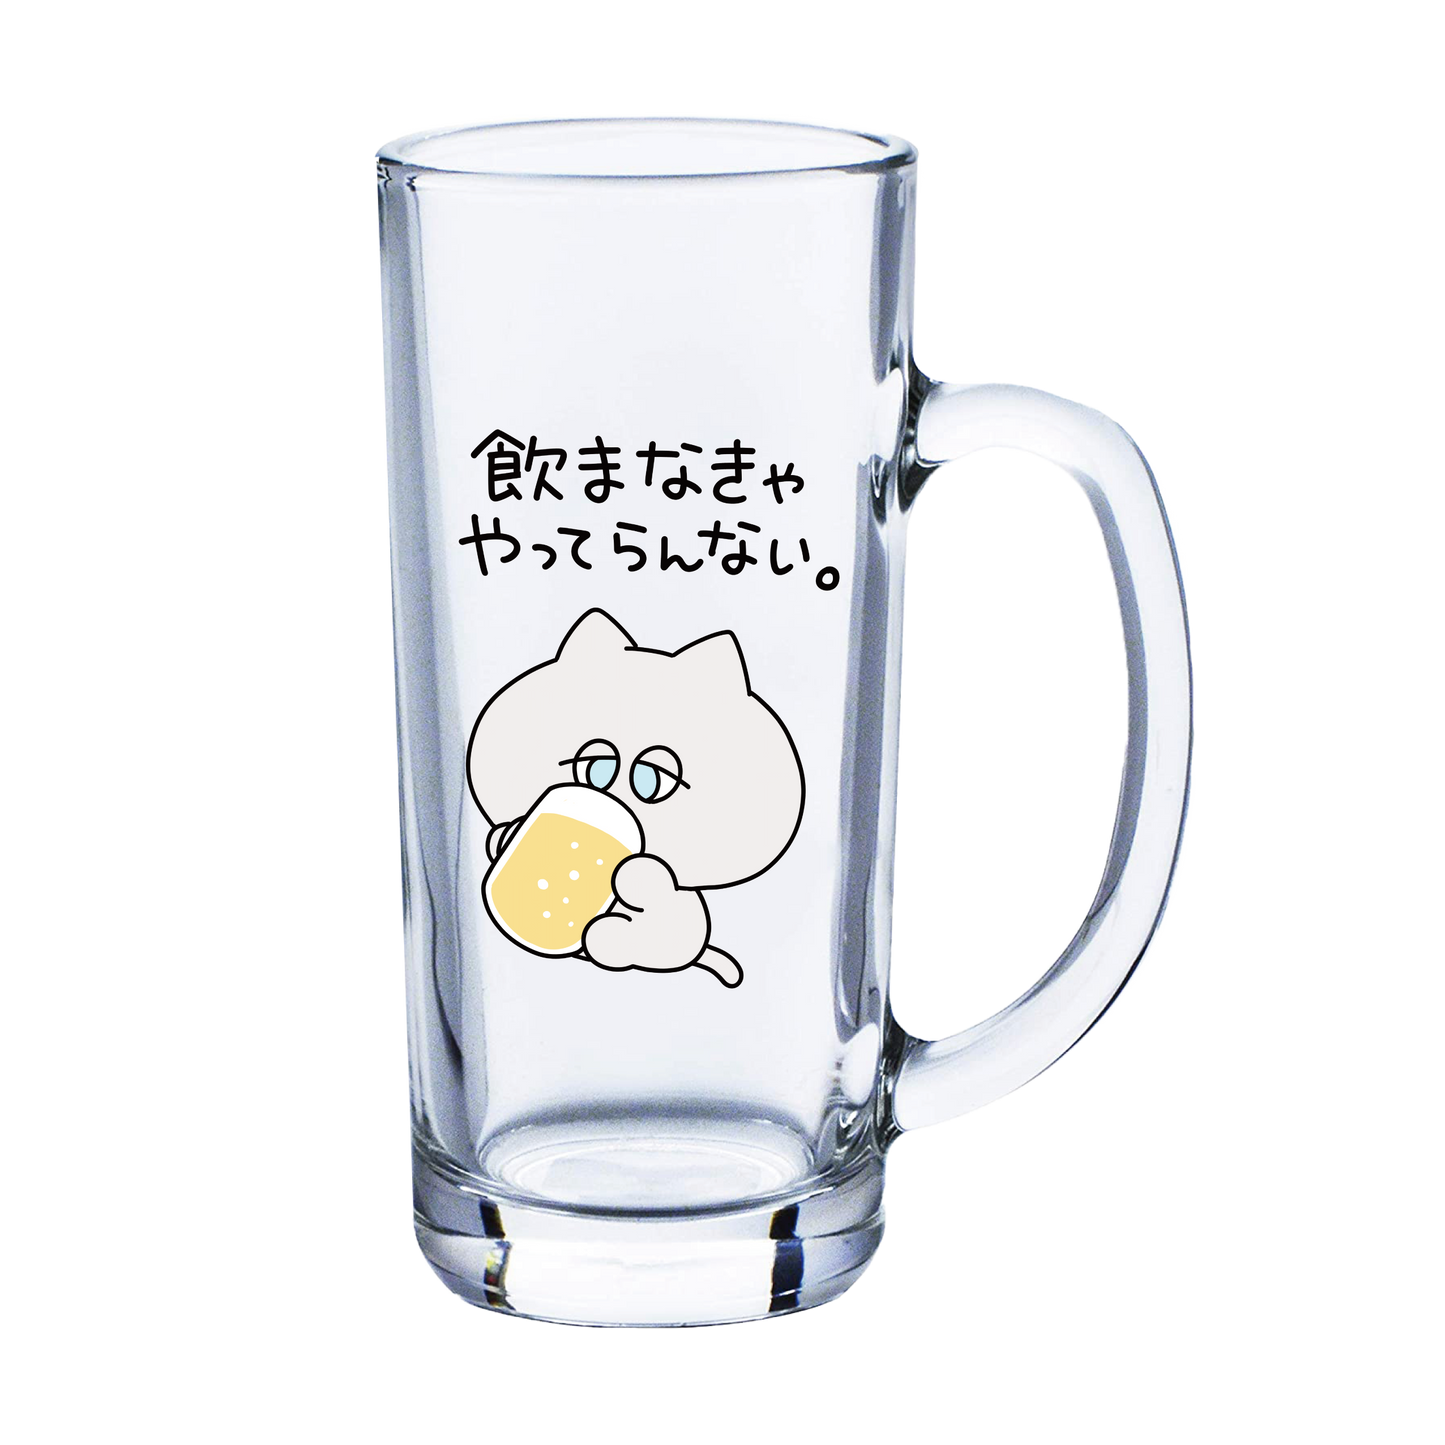 [Asamimi-chan] Il boccale di birra preferito di Danny-kun [Su ordinazione]